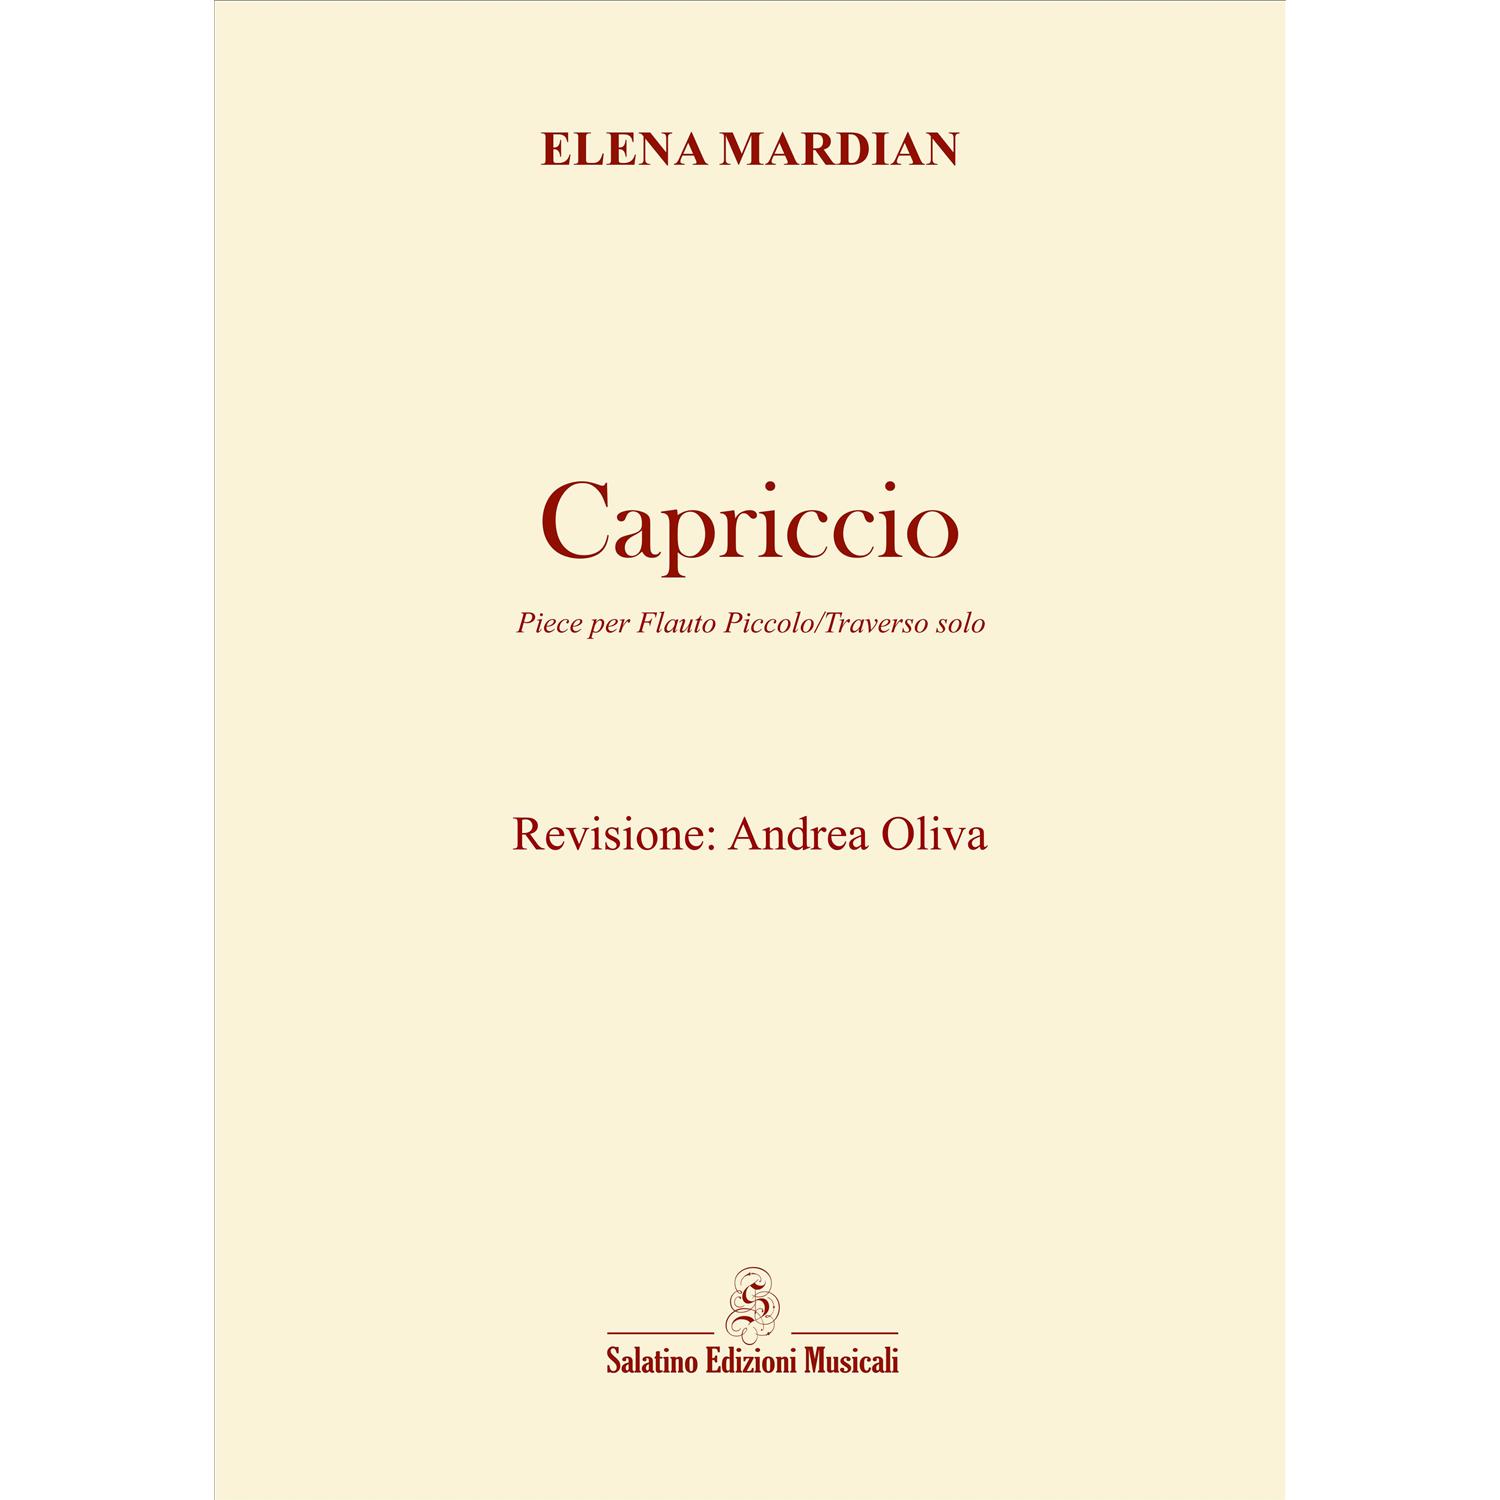 Capriccio | Elena Mardian - Revisione Andrea Oliva